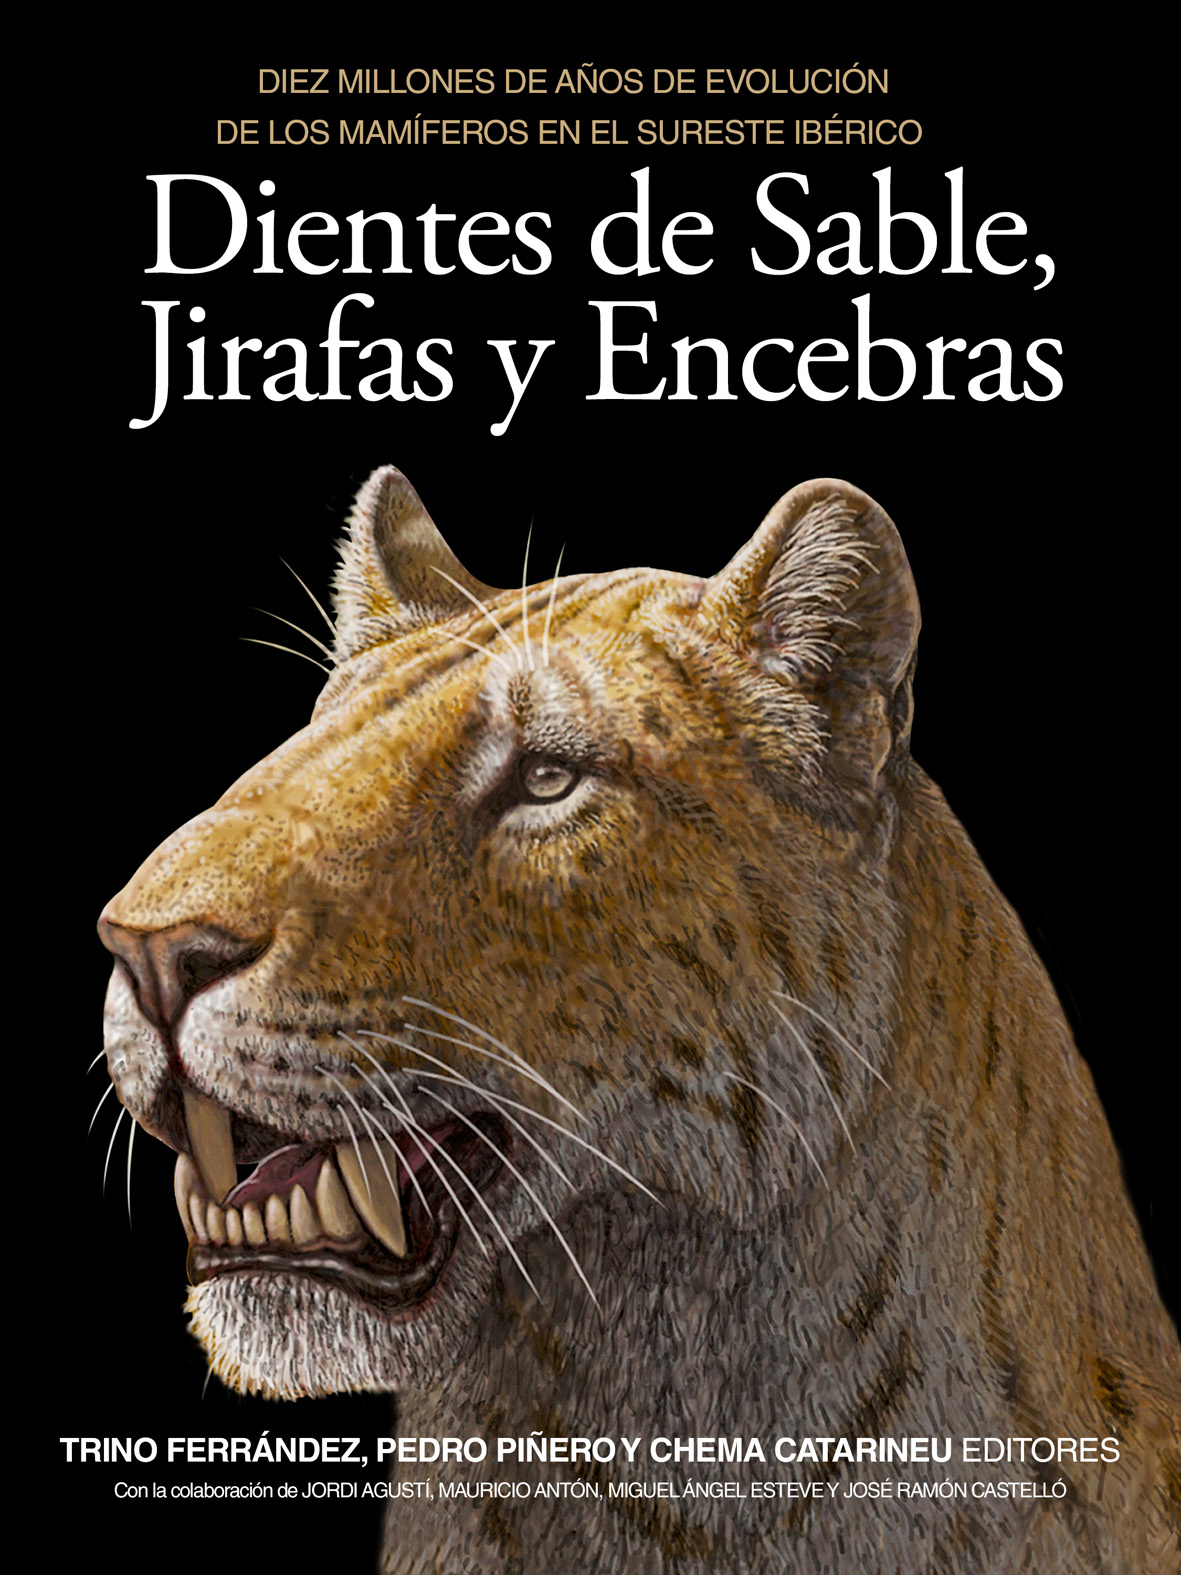 El libro que aborda la evolución de los mamíferos en el sureste de la península ibérica desde hace 10 millones de años 1